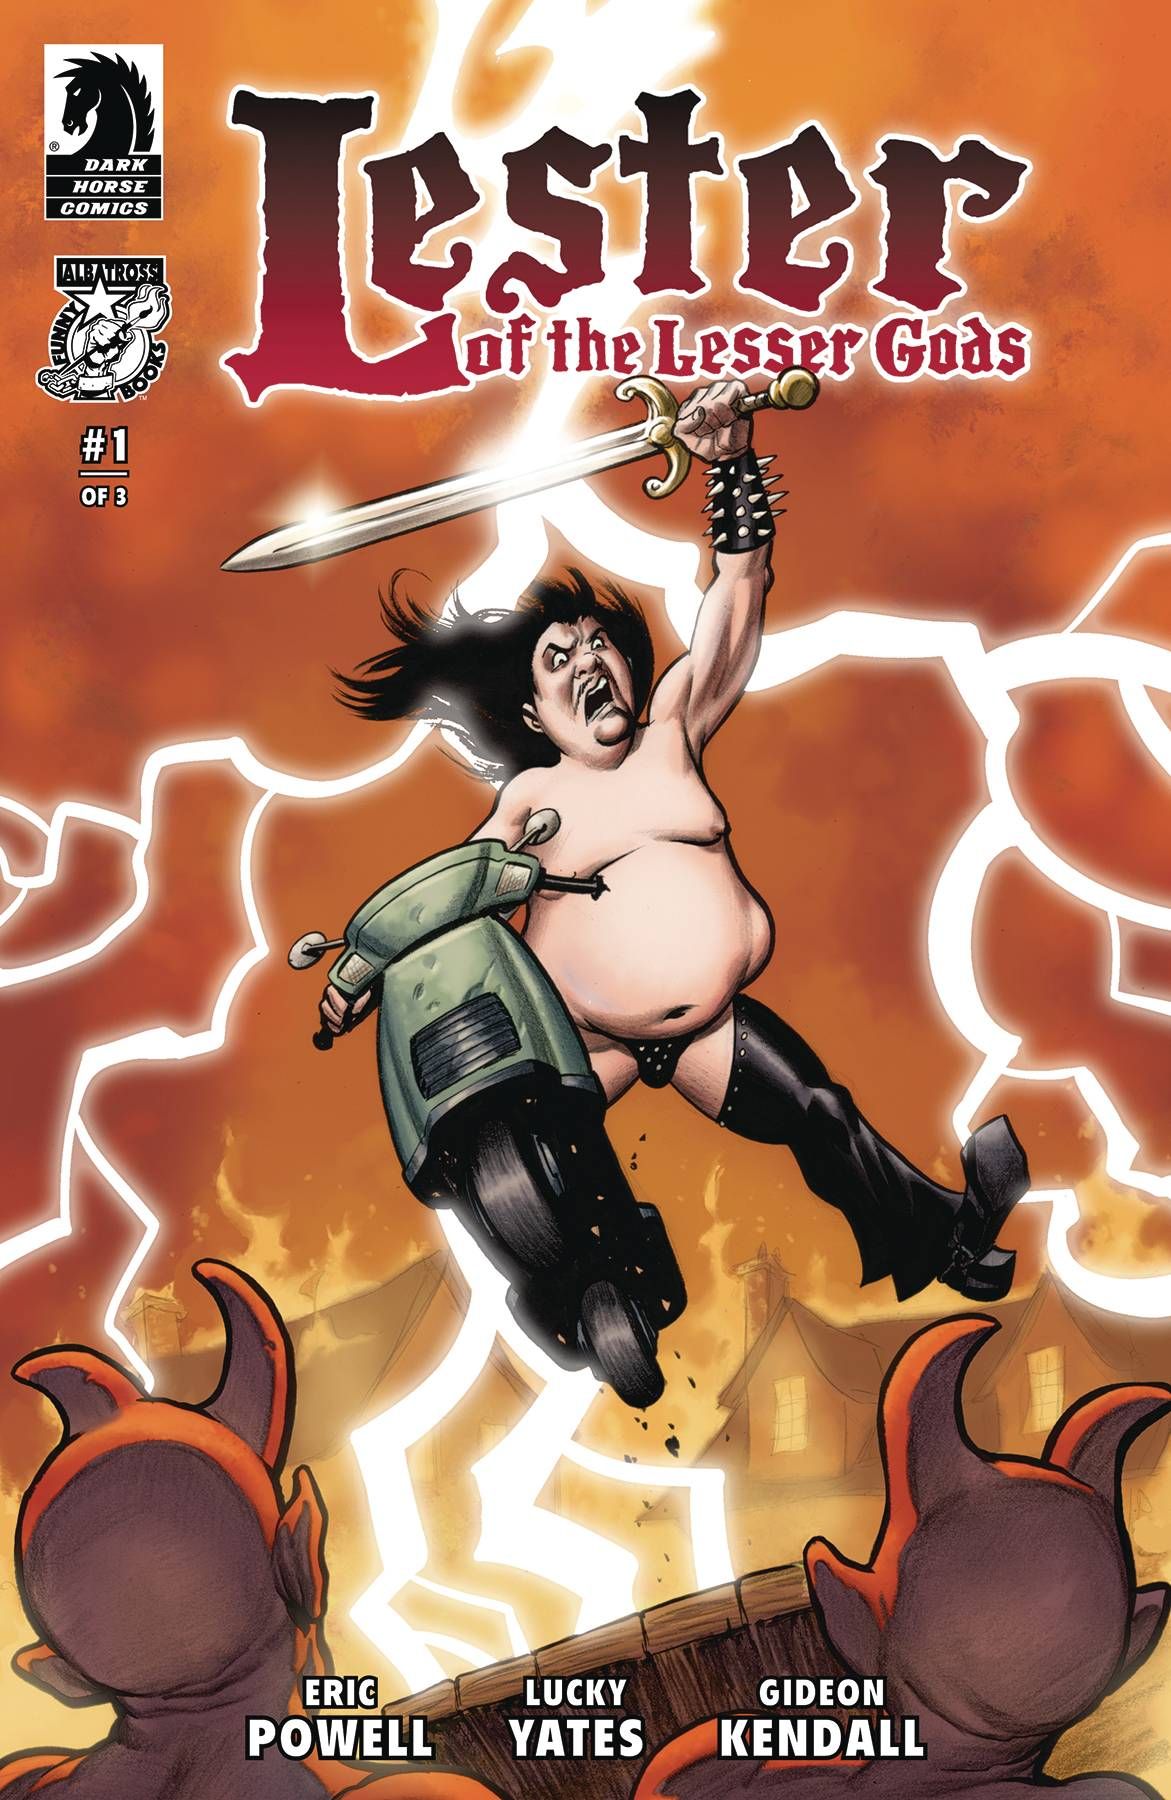 Lester Of Lesser Gods #1 (Cvr B Powell) Comic